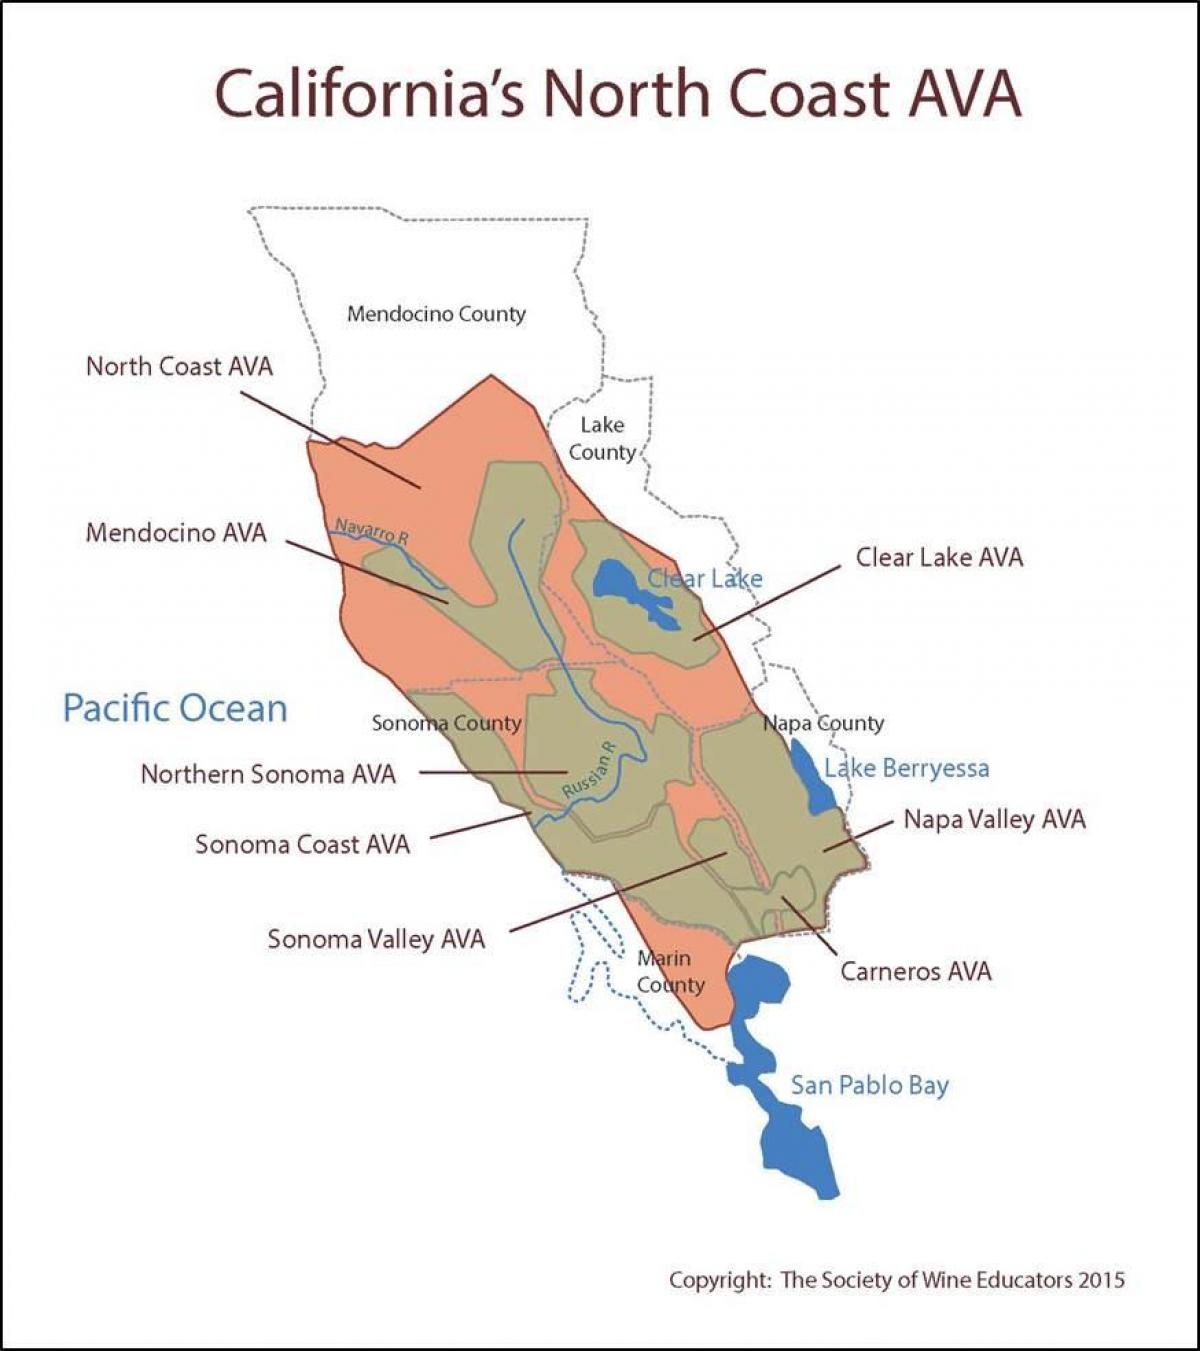 Карта калифорнийского побережья к северу от Сан-Франциско